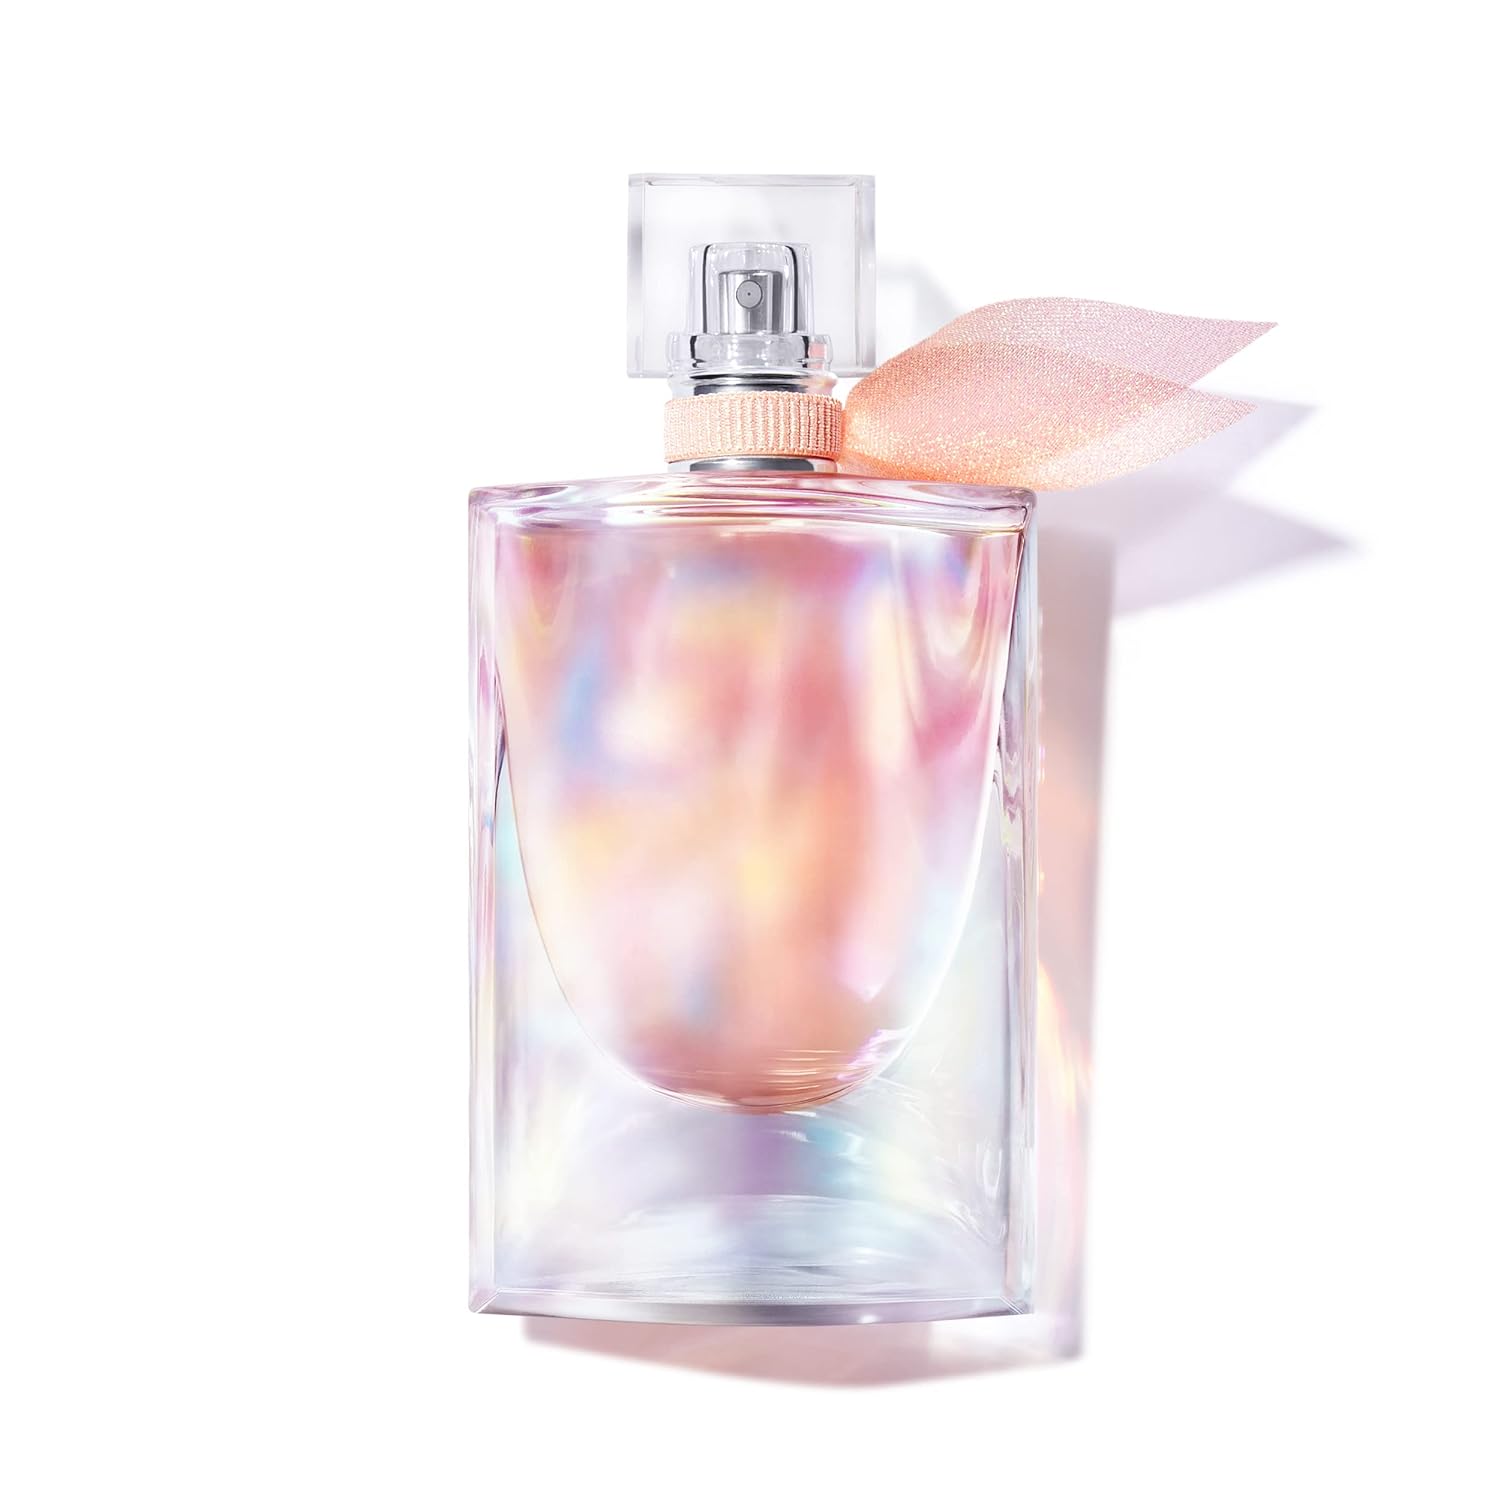 Lancôme? La Vie Est Belle Soleil Eau de Parfum - Long Lasting Fragrance with Notes of Citrus, Sweet Vanilla & Tropical Coconut - Warm & Radiant Women's Perfume - 1.7 Fl Oz